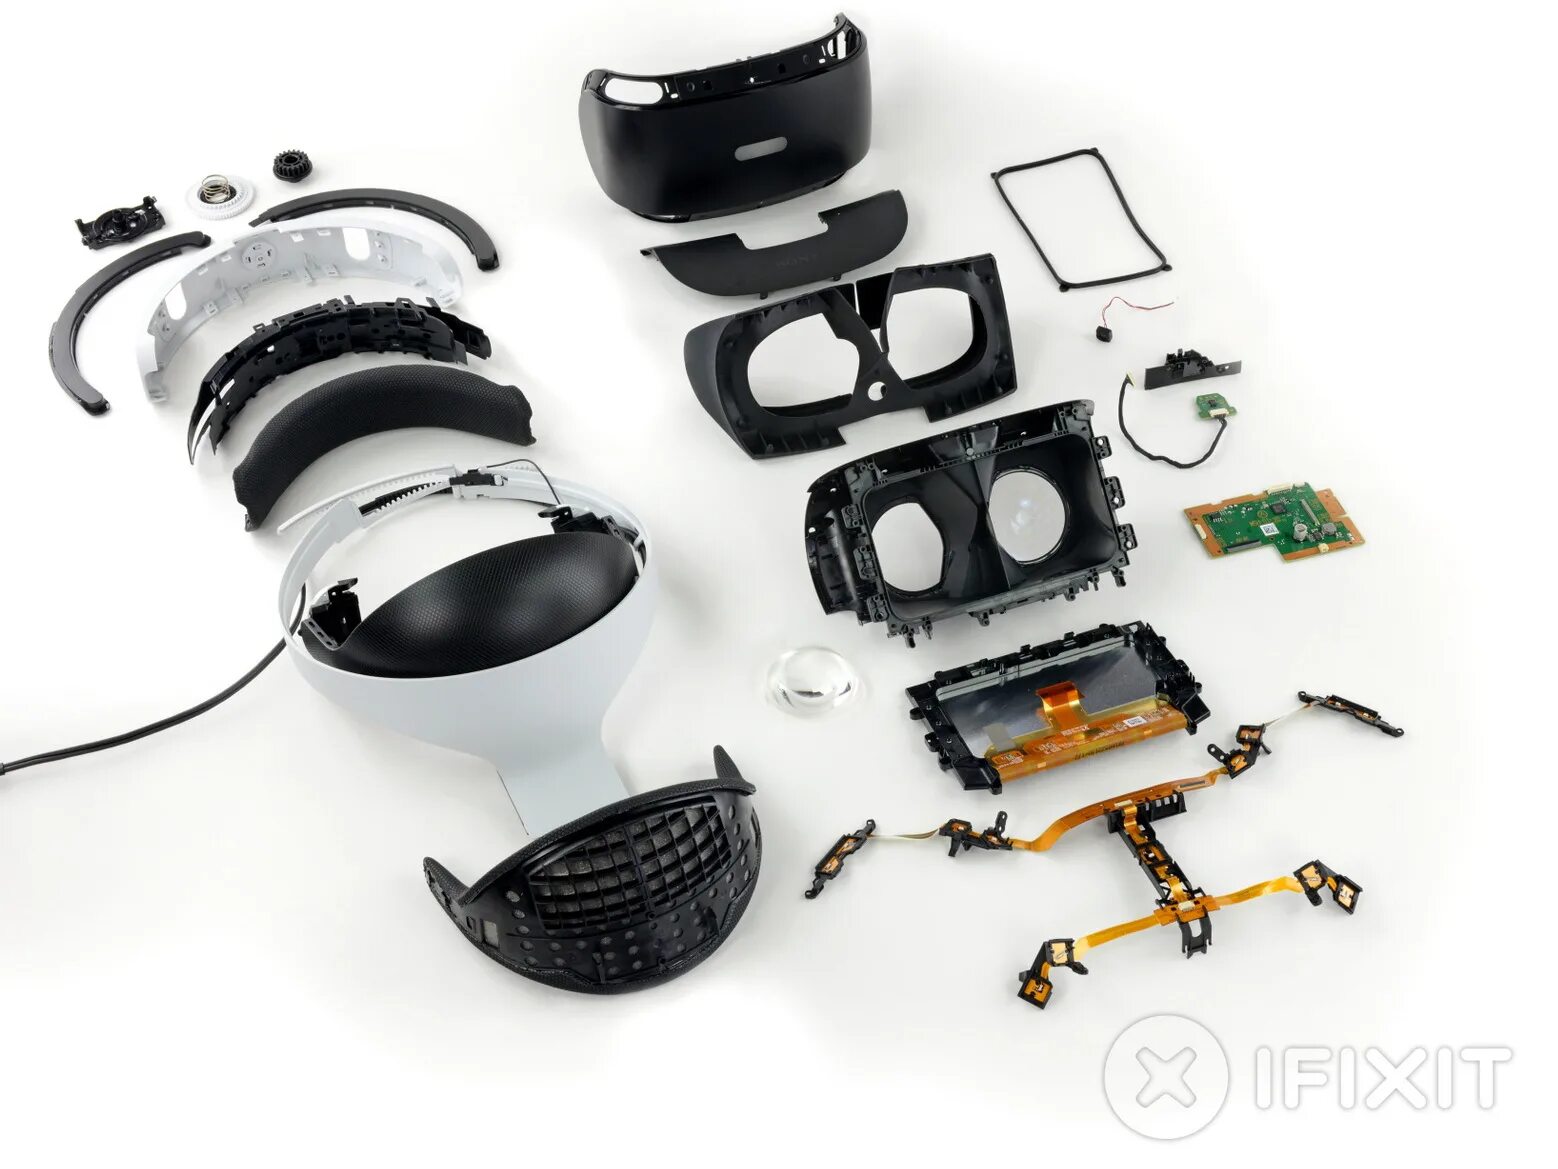 Сони плейстейшен vr2. Шлем Sony PLAYSTATION VR. Шлем виртуальной реальности VR 2 Sony. Комплектующие PS VR 1. Sp vr